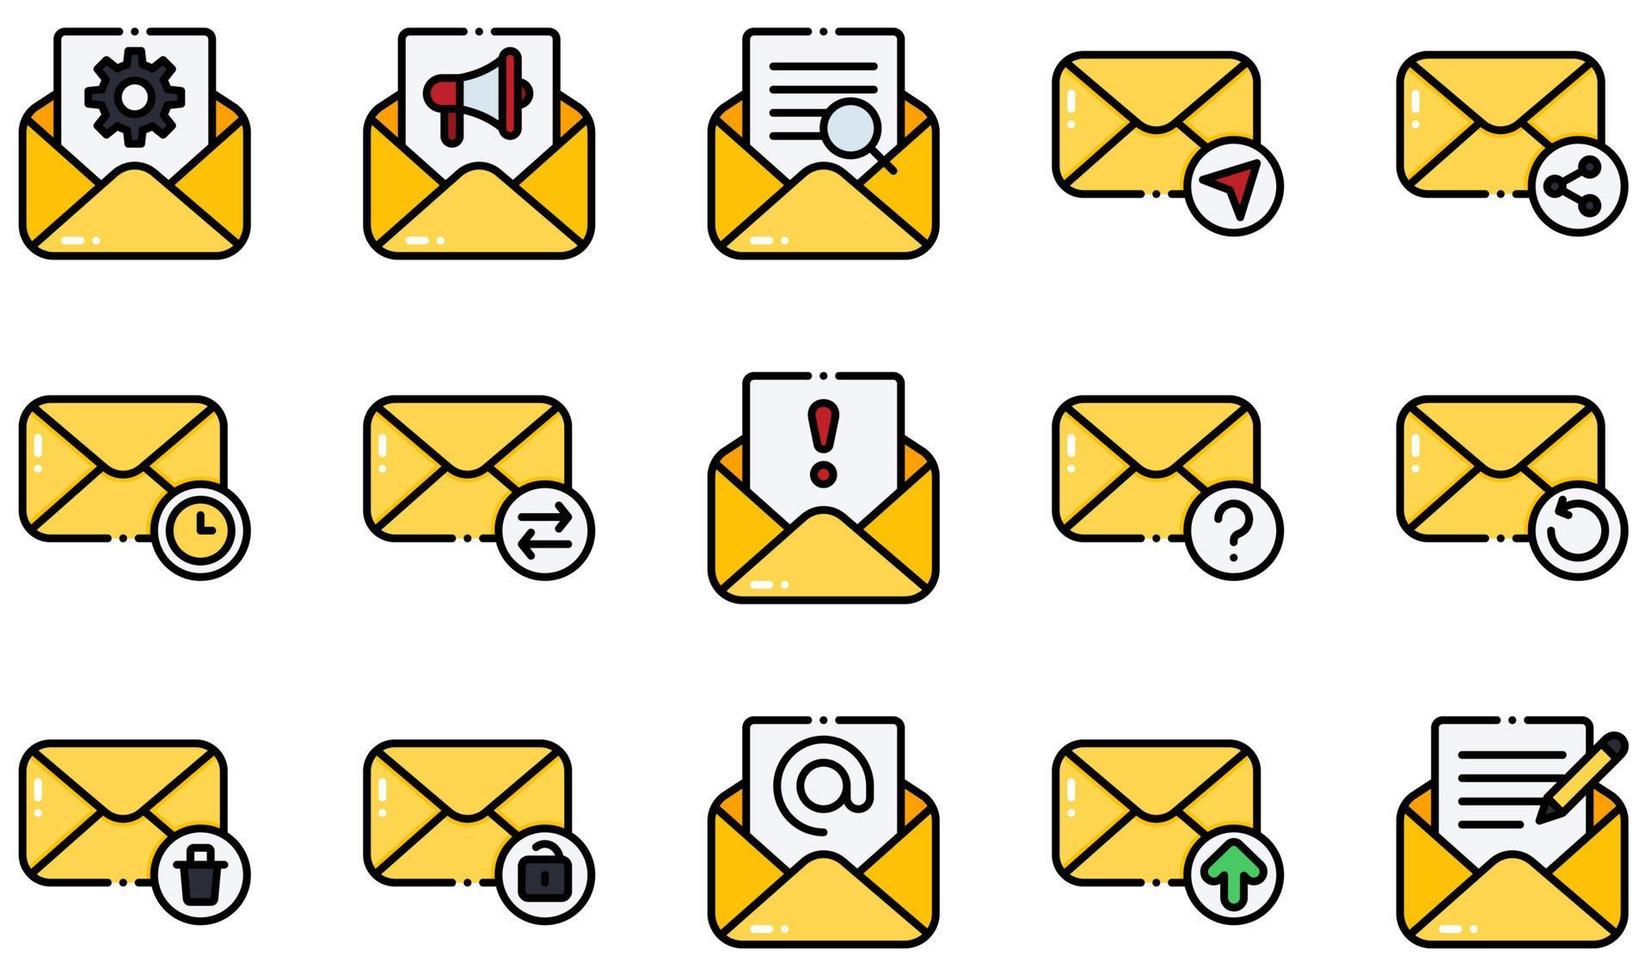 conjunto de iconos vectoriales relacionados con el correo electrónico. contiene íconos como correo electrónico abierto, opciones, búsqueda, envío de correo, spam, carga y más. vector